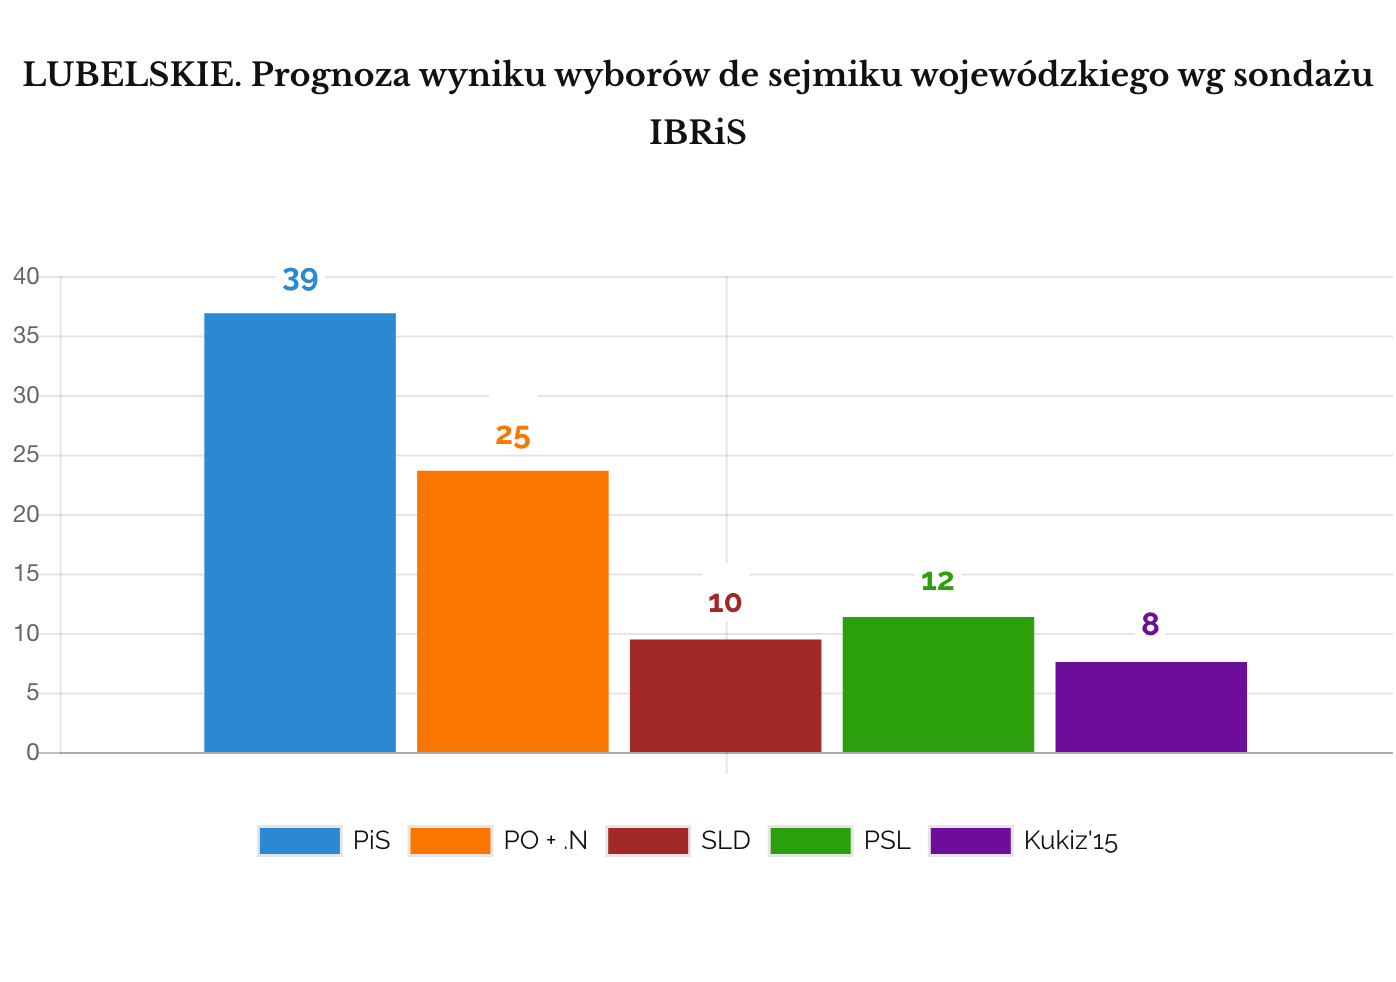 IBRIS Prognoza wyniku wyborów do sejmików wojewódzkich. LUBELSKIE